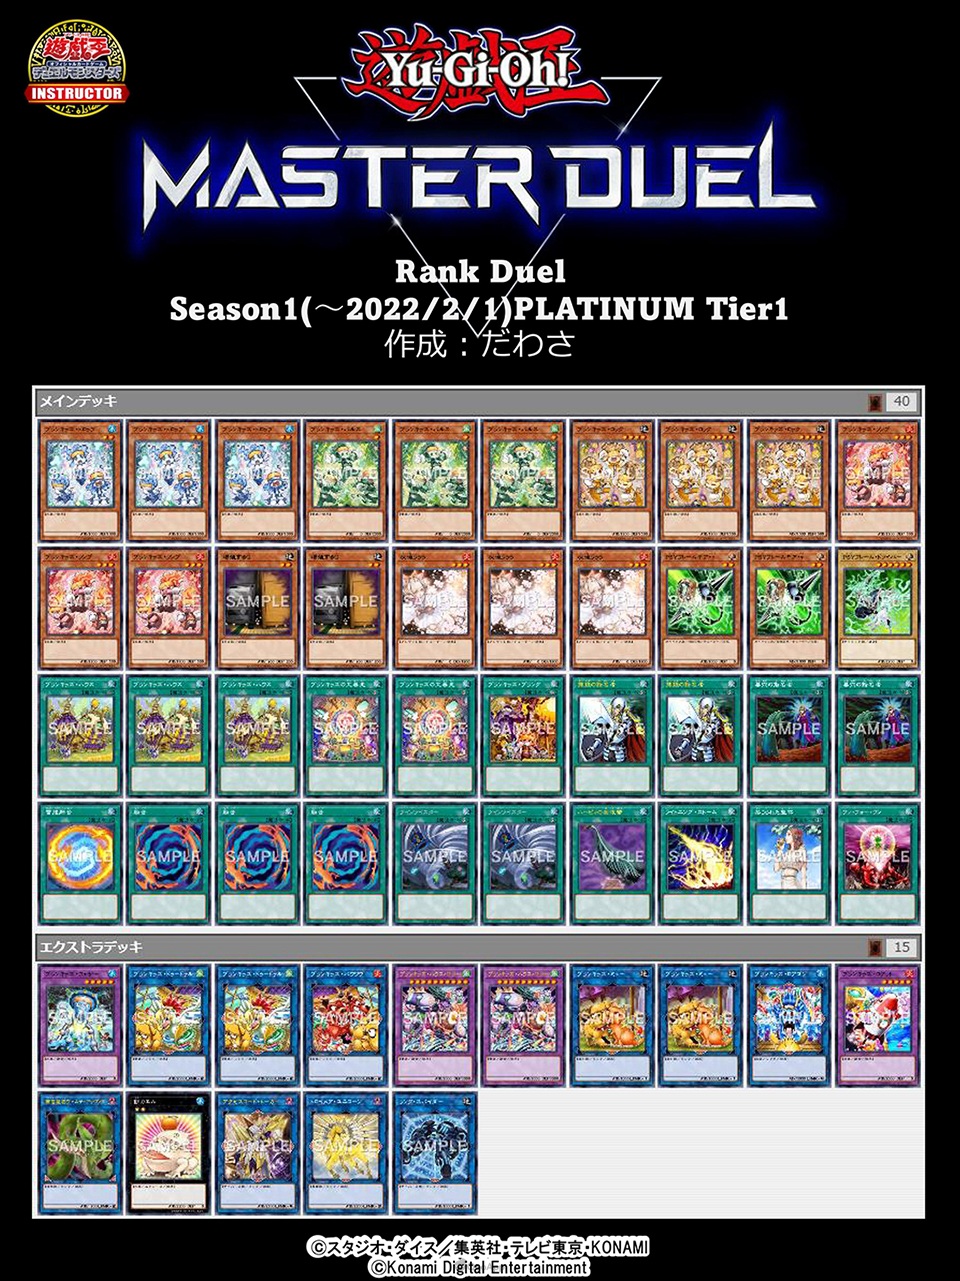 《遊戲王 Master Duel》突破千萬下載！Season 1白金牌組公開-第32張